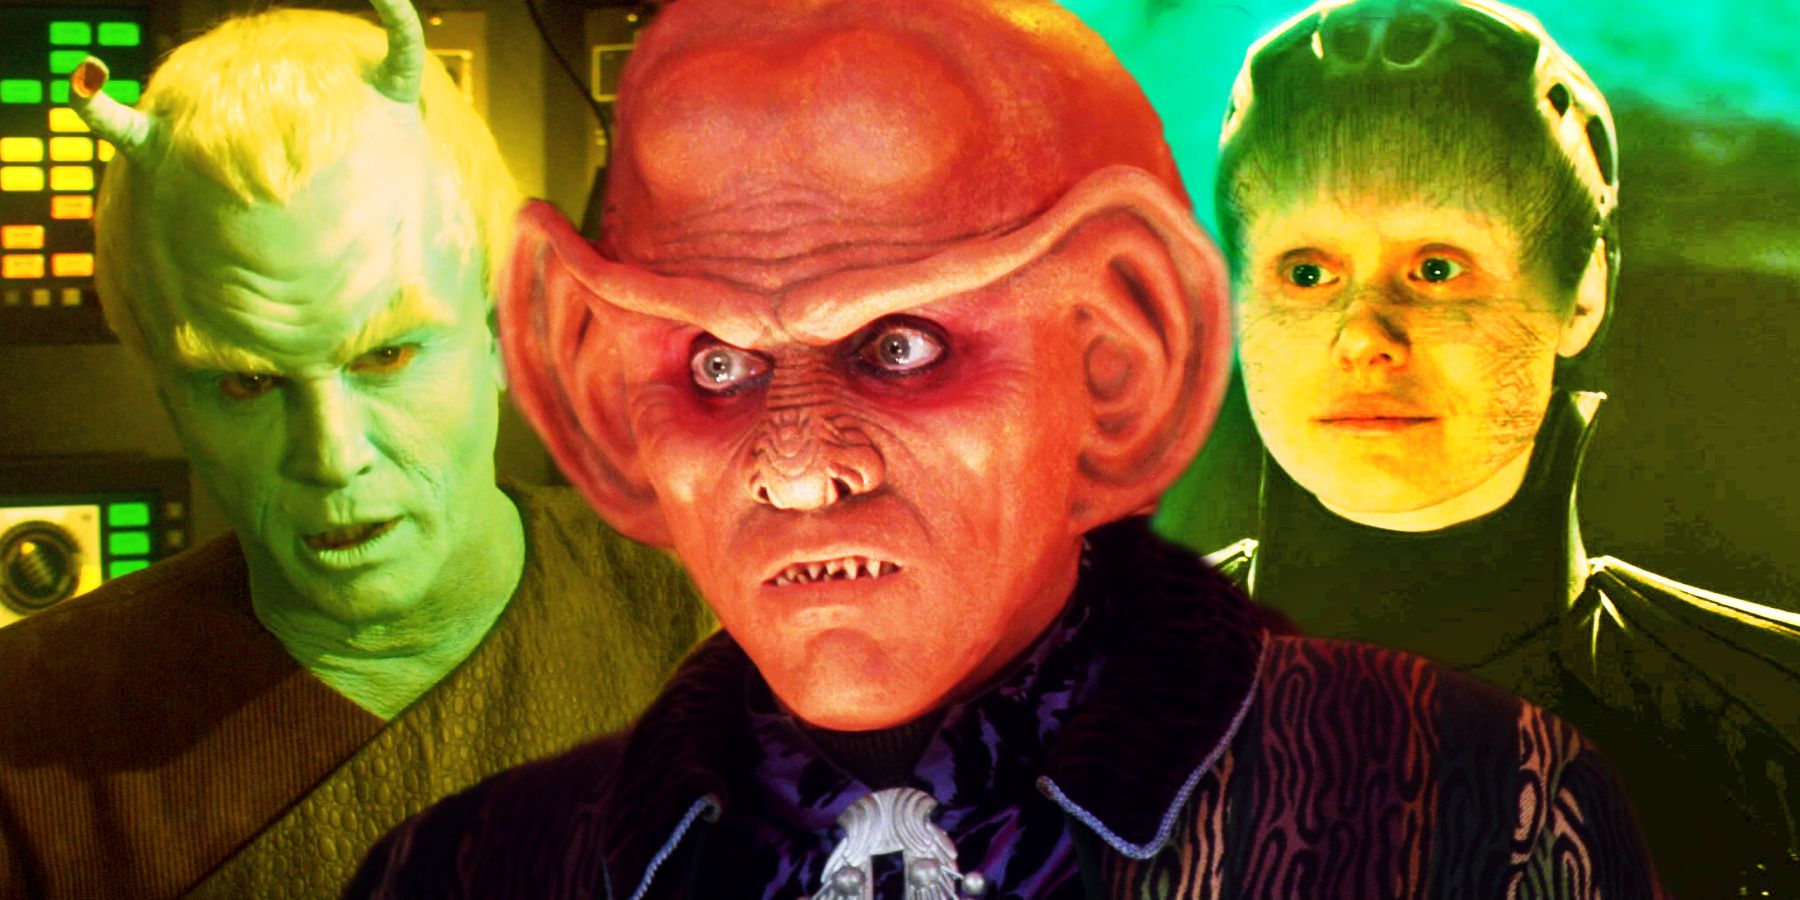 8 extraterrestres enemigos de Star Trek que se convirtieron en héroes